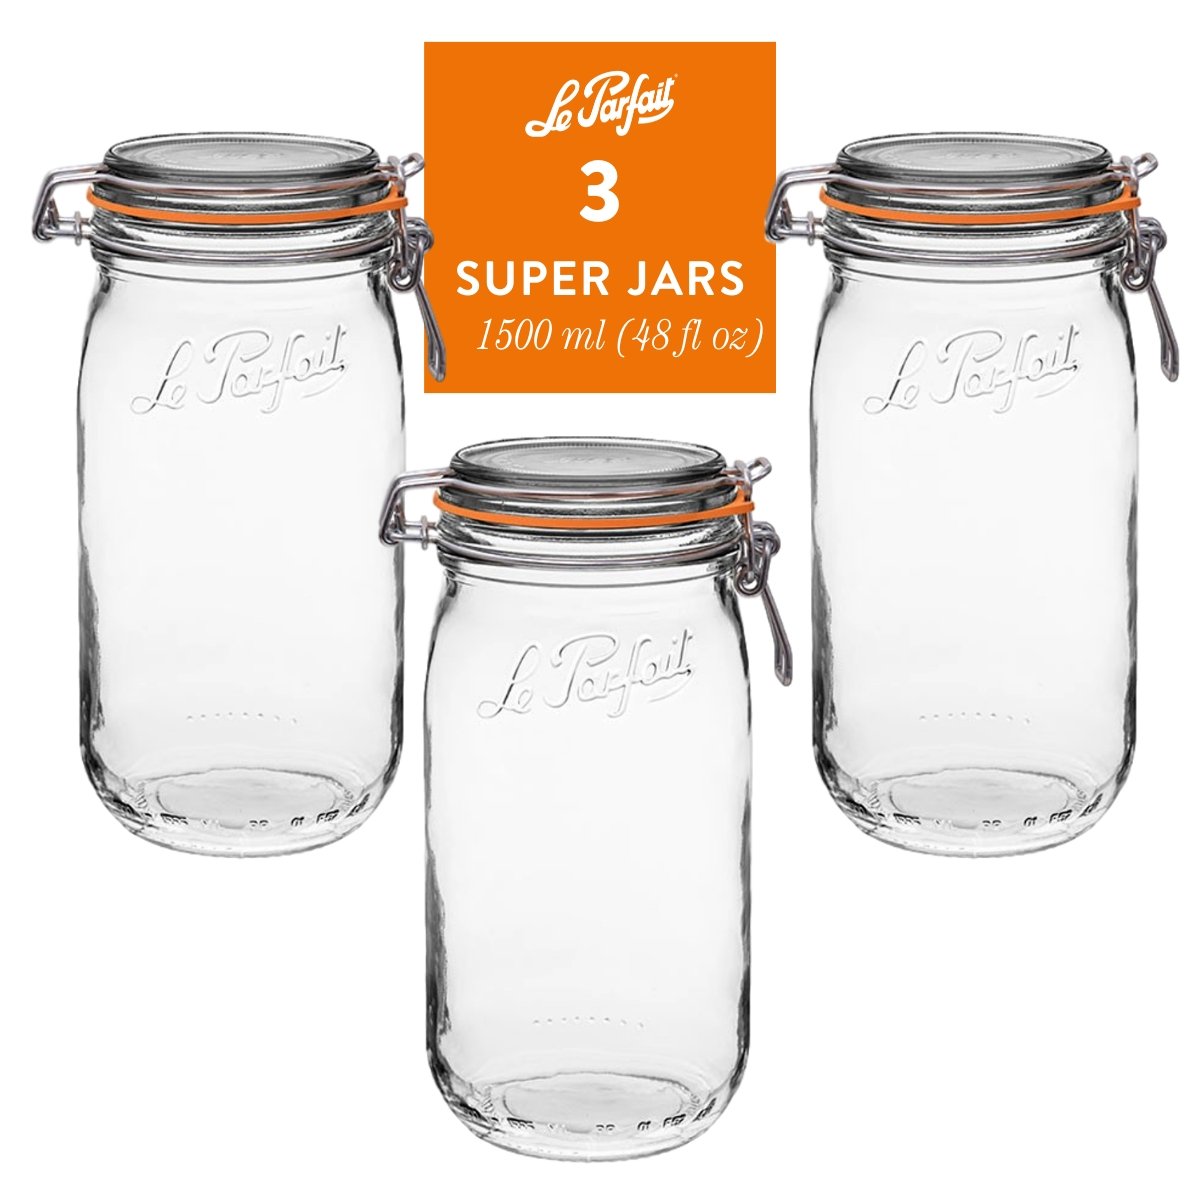 Le Parfait Super Jars